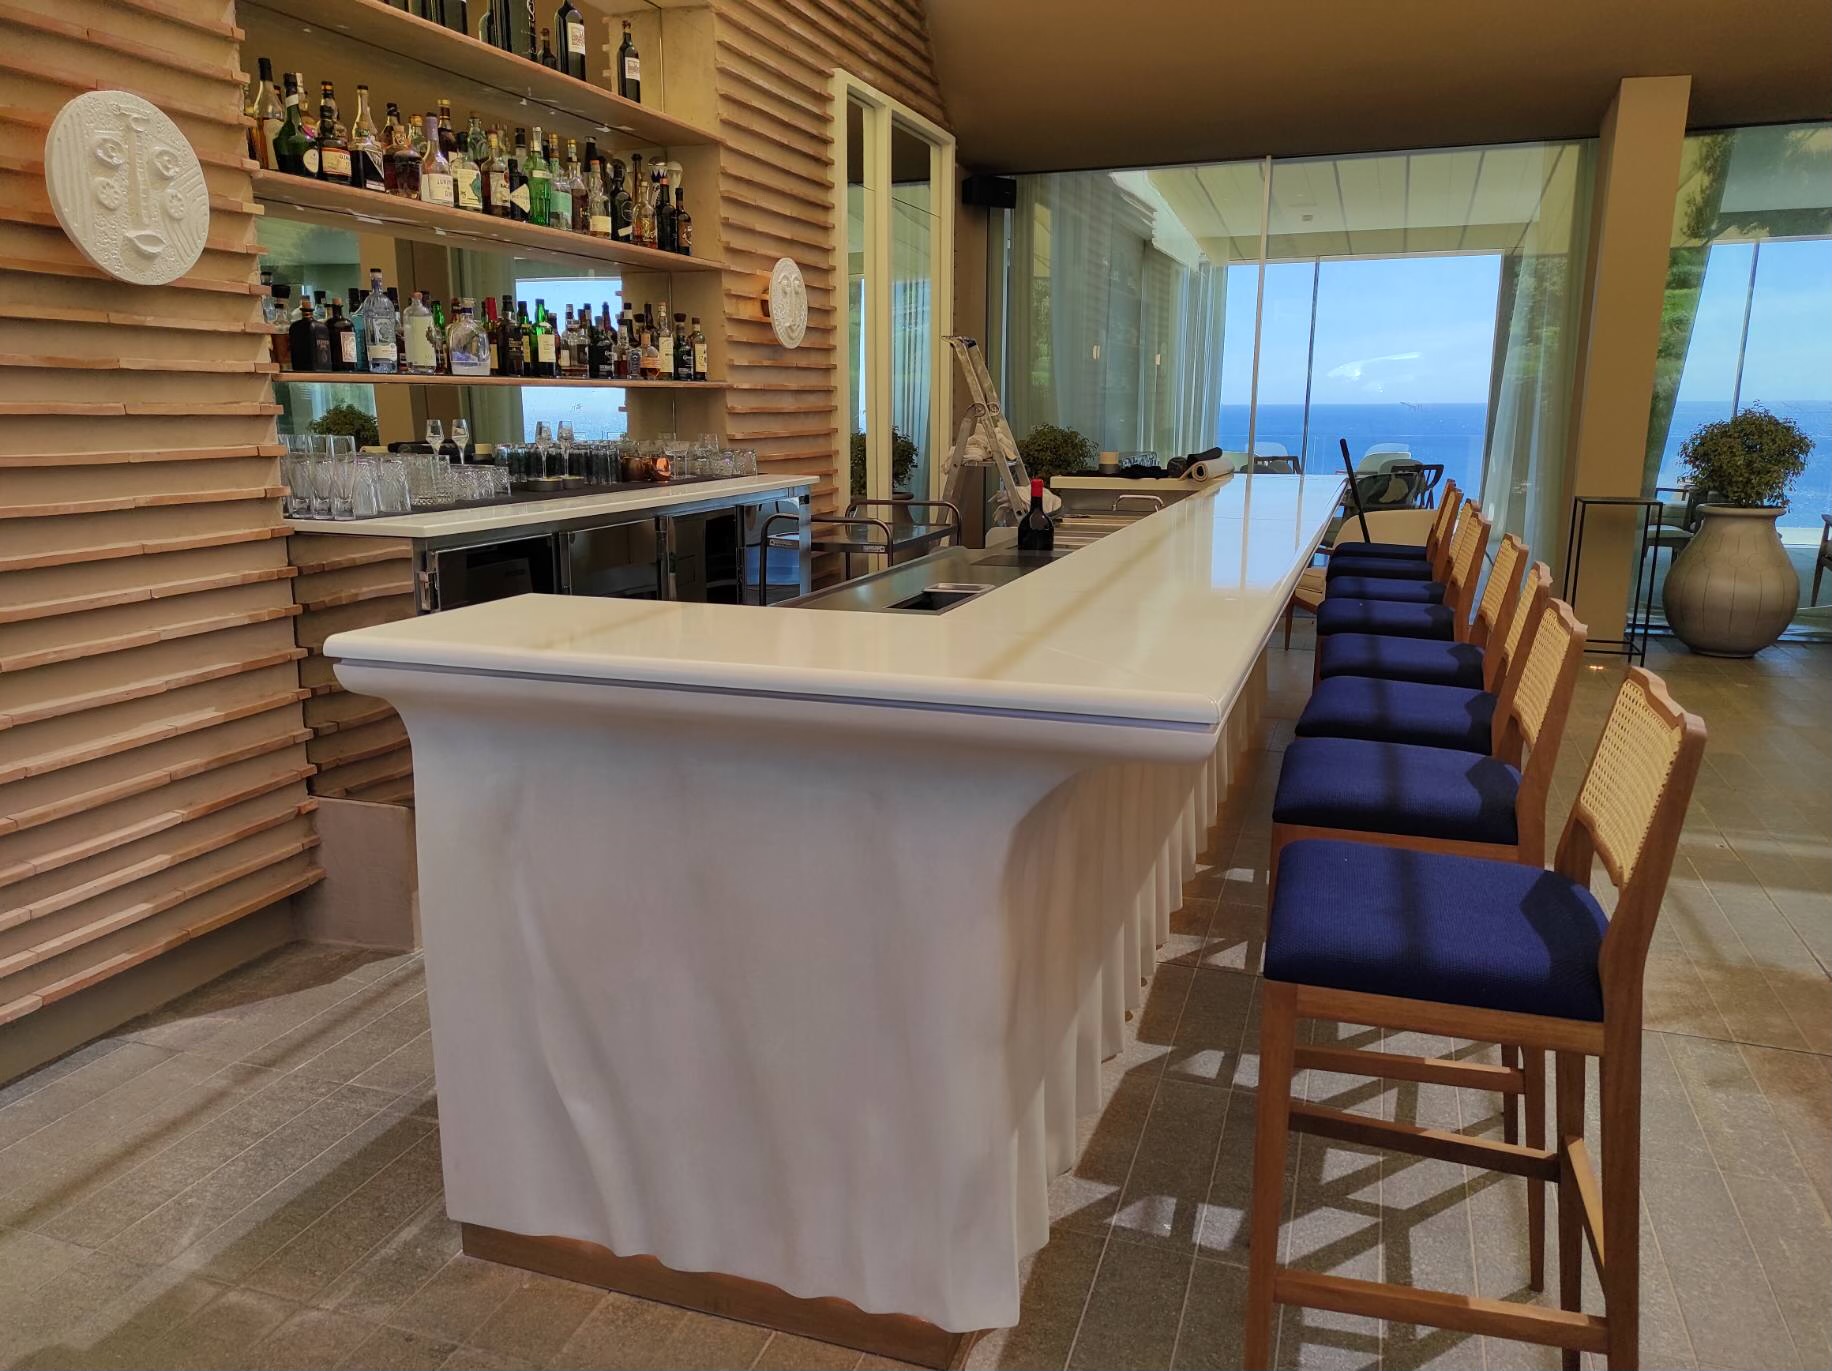 Plateaux de table et lobby bar en pierre de lave émaillée